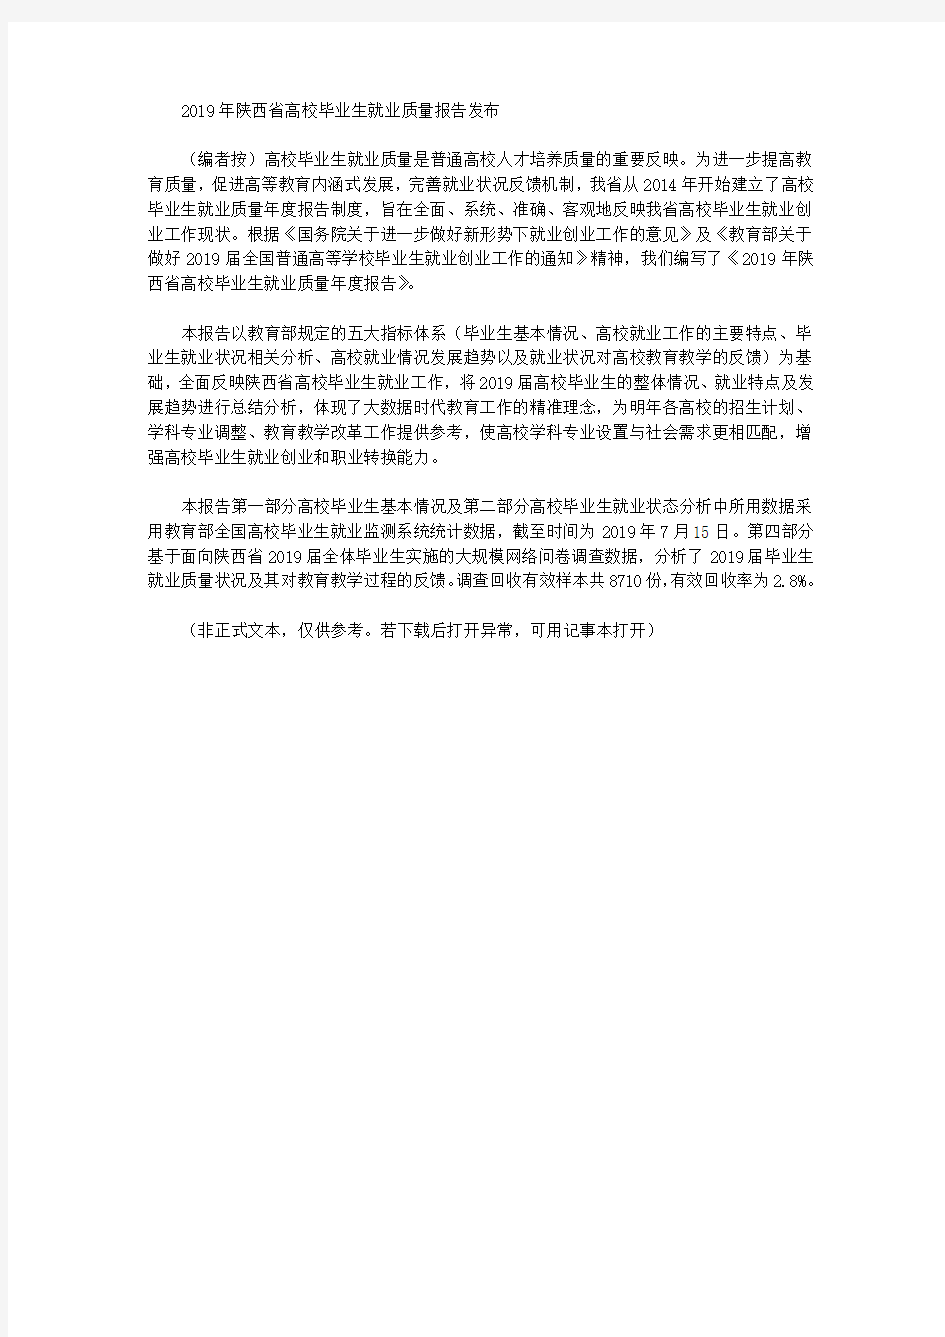 2019年陕西省高校毕业生就业质量报告发布